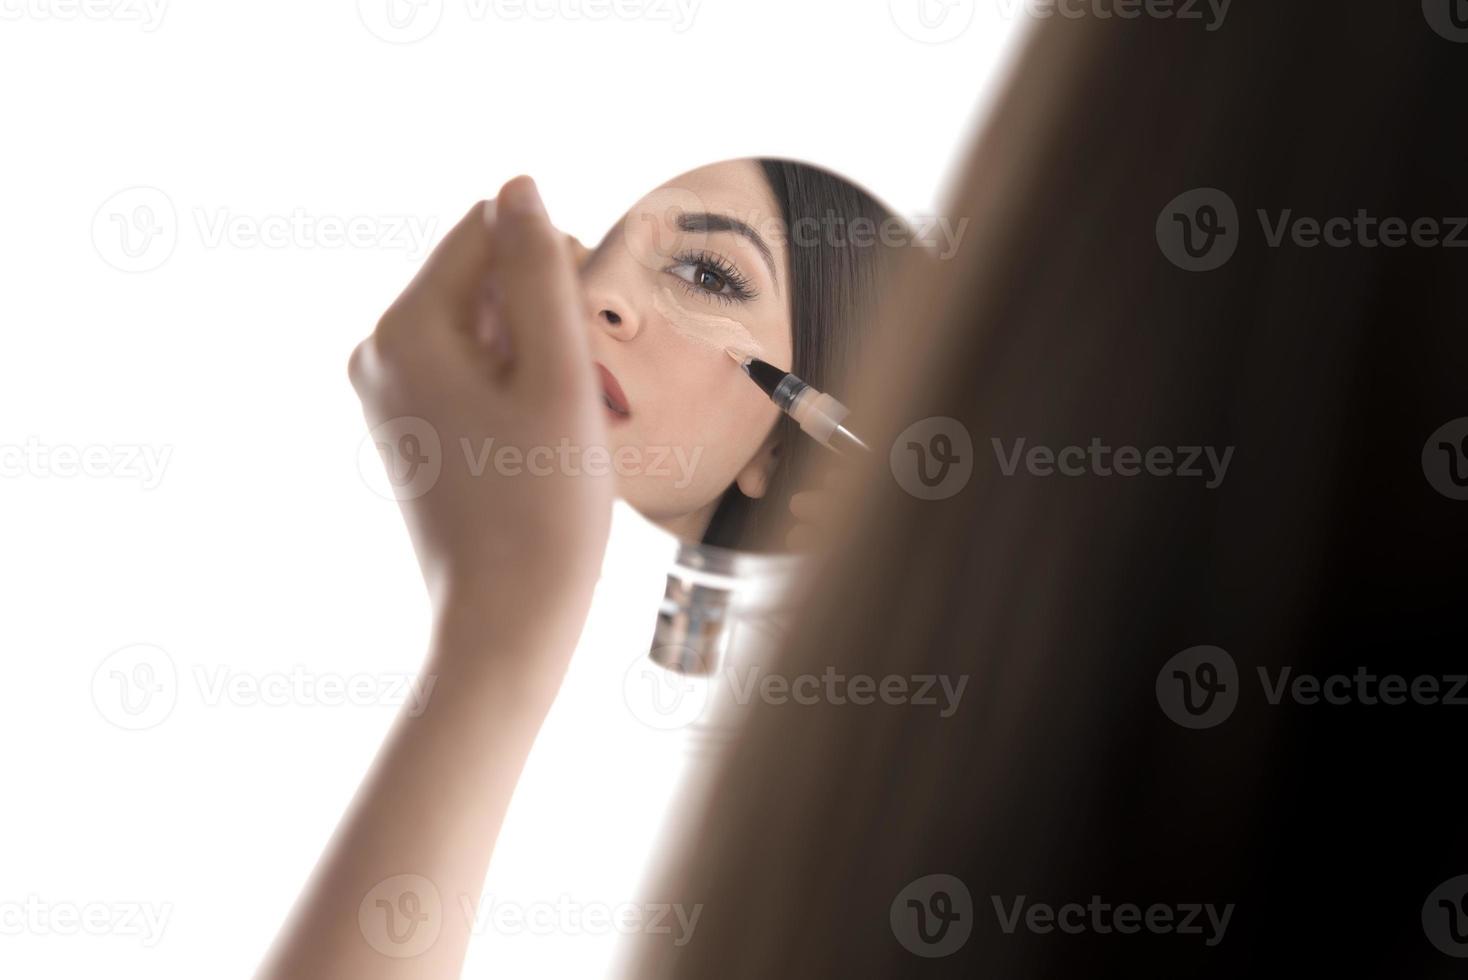 portrait d'une jeune femme appliquant un maquillage liquide sur son visage. isolé sur fond blanc photo